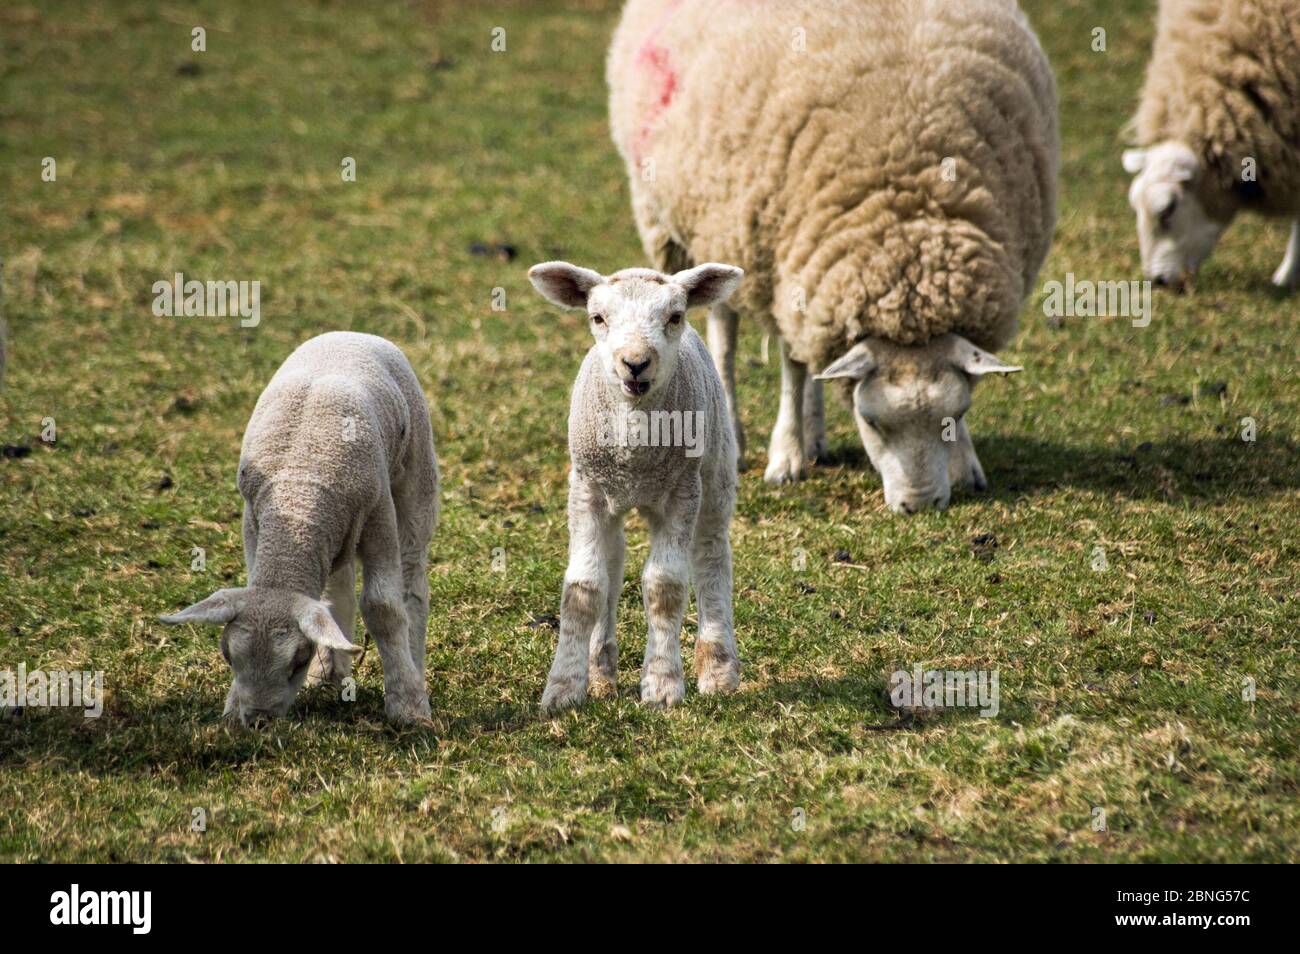 Un agneau curieux regarde le spectateur alors que ses deux moutons et d'autres moutons continuent de brouter dans un champ. Banque D'Images